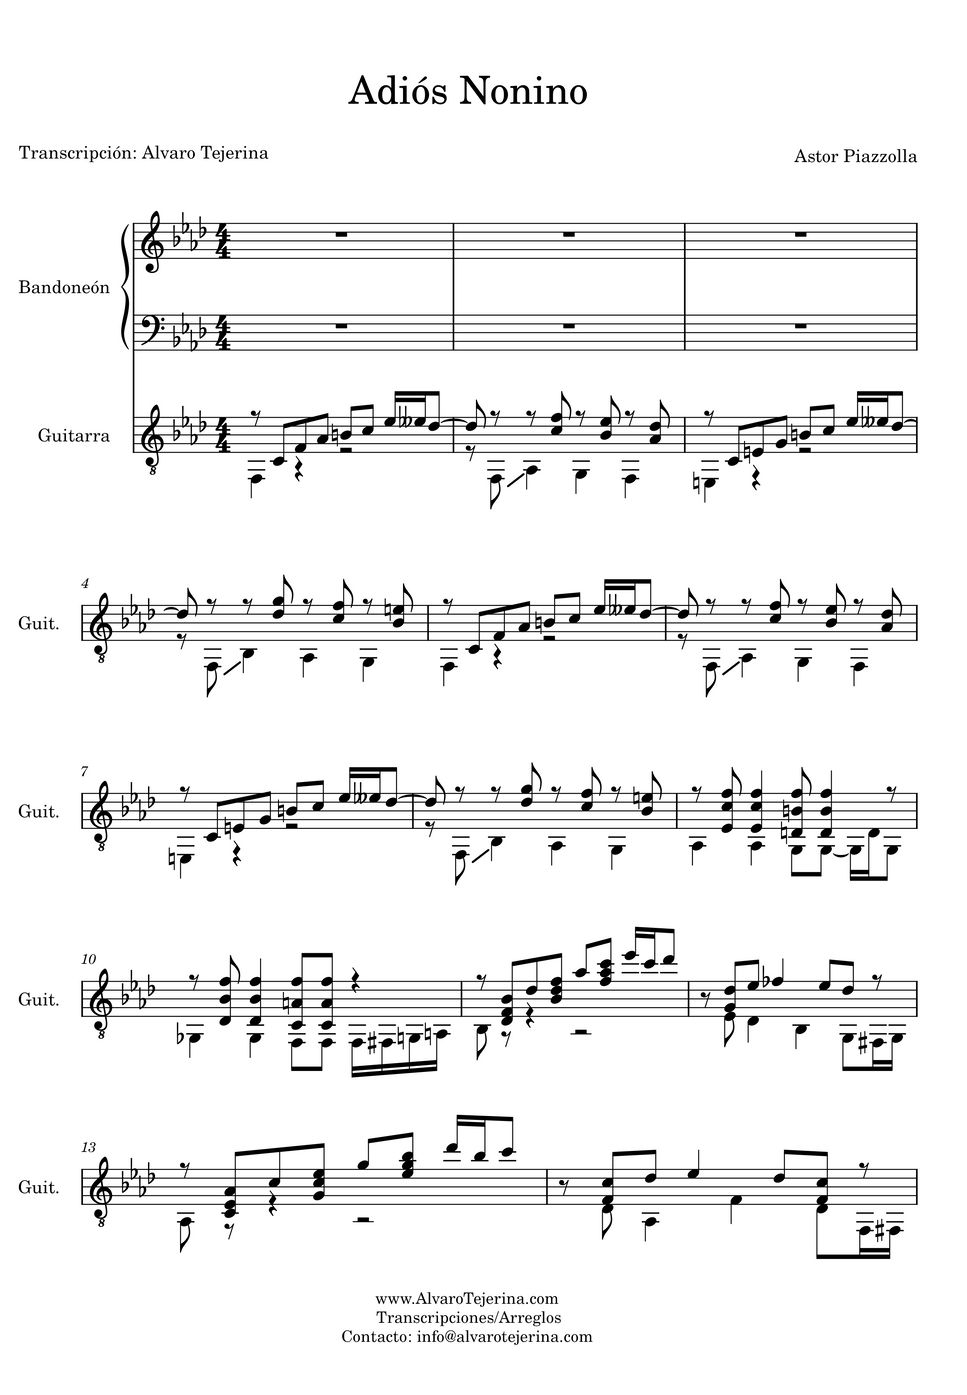 Astor Piazzolla - Adiós Nonino (Guitarra y Bandoneón) by Astor Piazzolla/Cacho Tirao